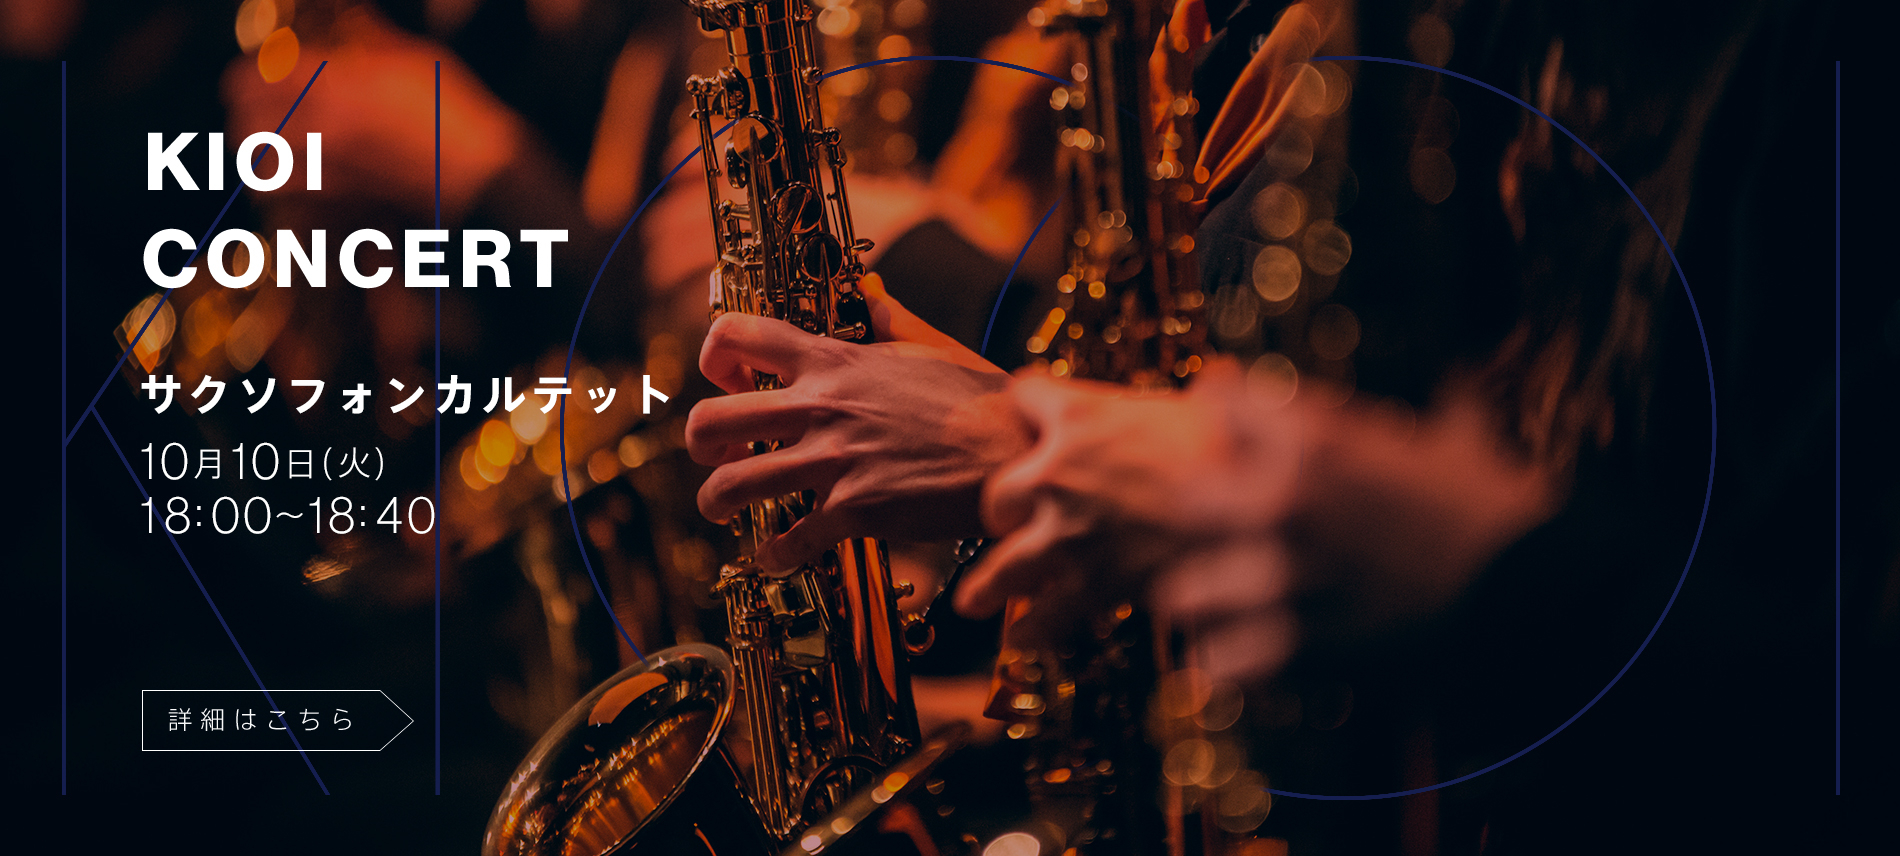 KIOI CONCERT 東京藝術大学在校生によるコンサート「サクソフォンカルテット」 